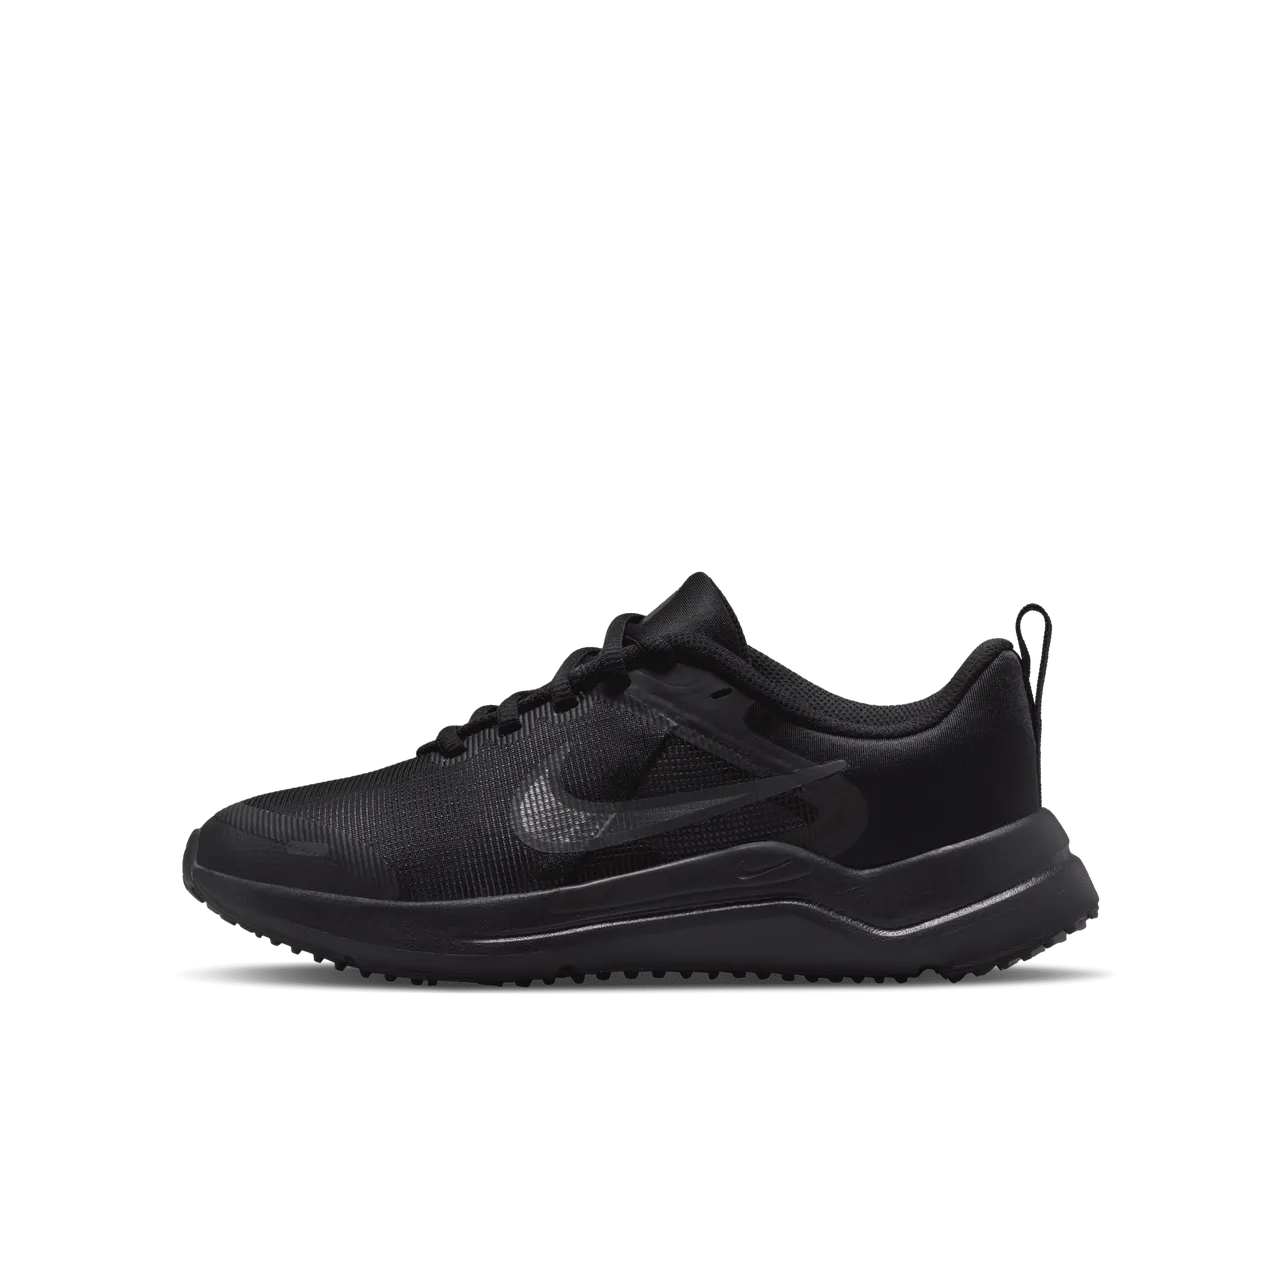 Nike Downshifter 12 Older Kids' Road Running Shoes - Black